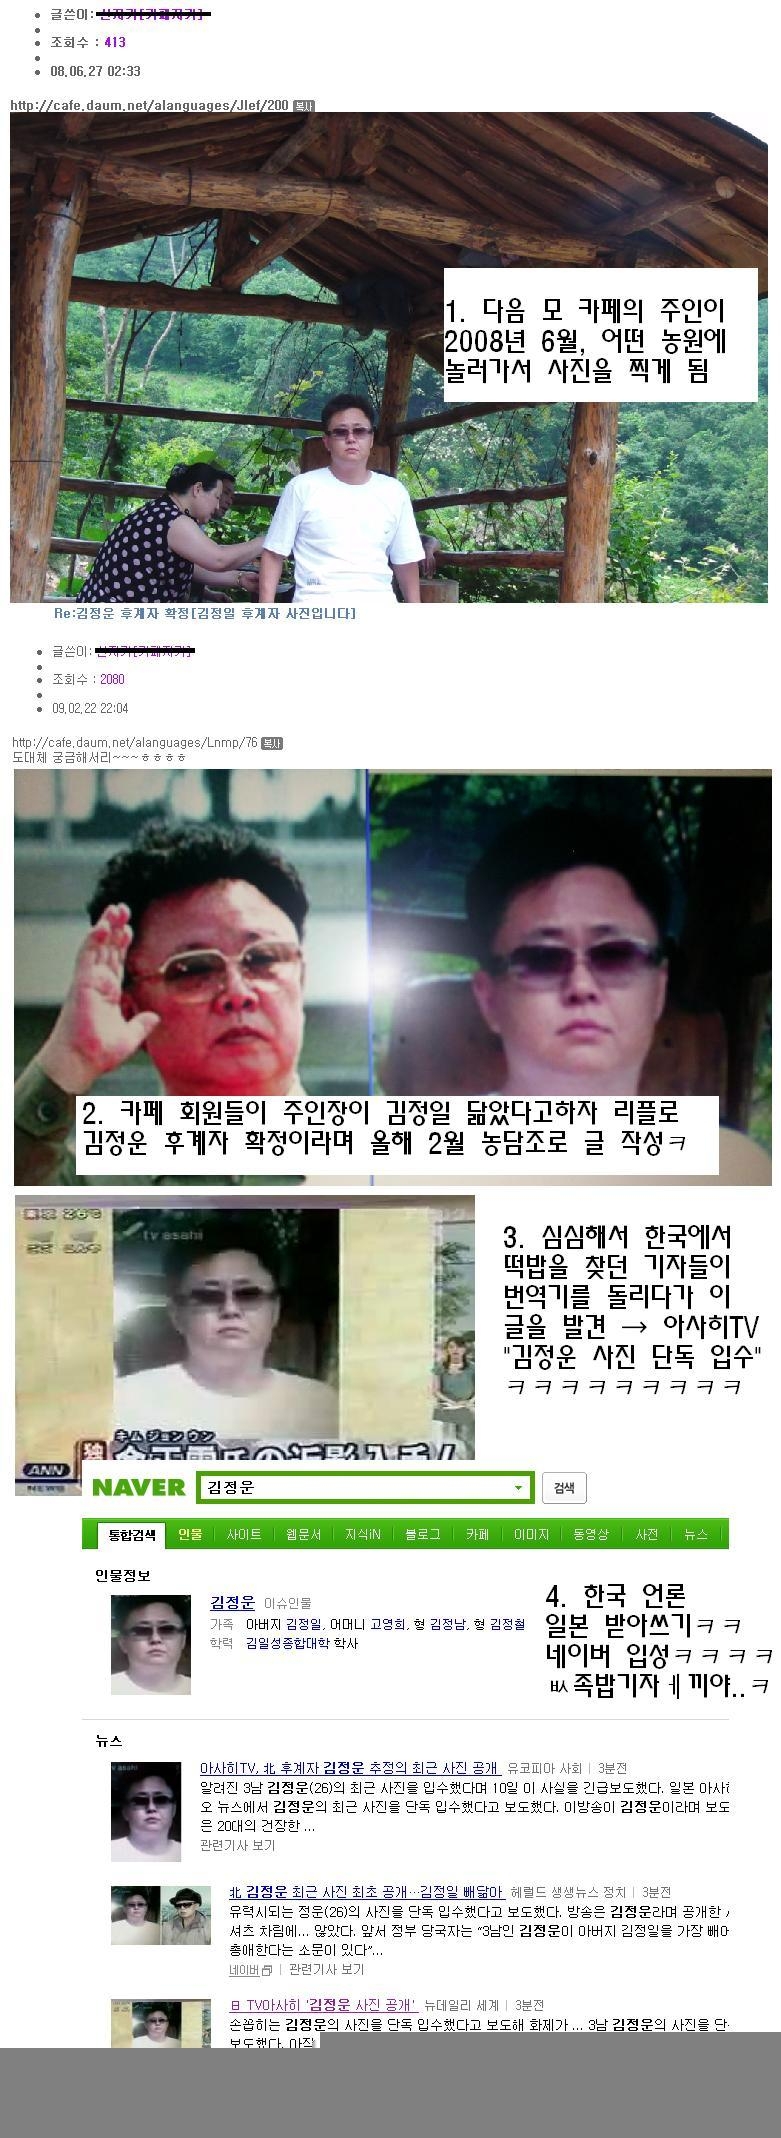 북한을 하룻밤에 손에 넣은 사나이